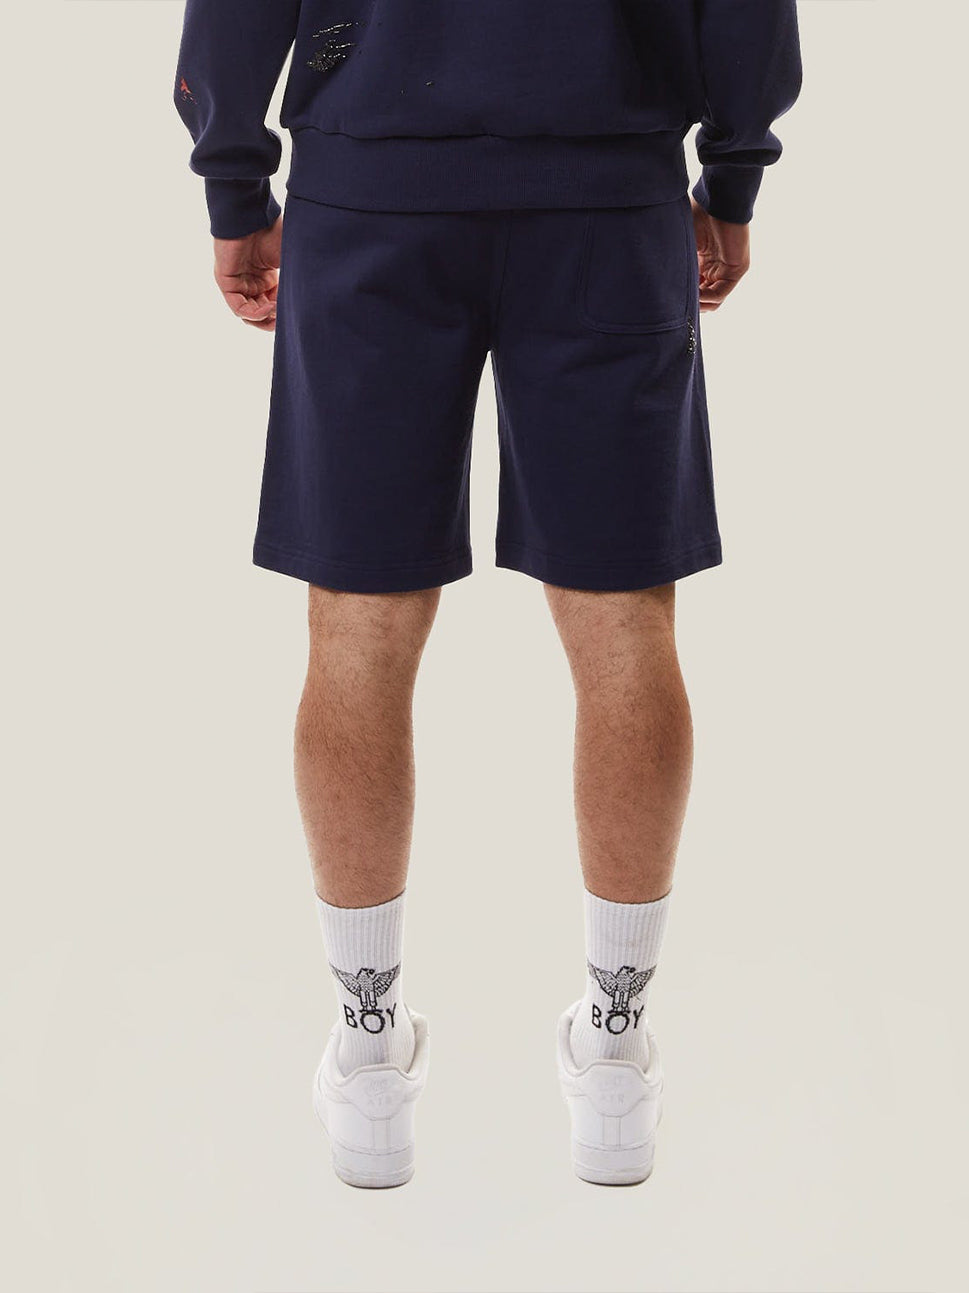 Boy London Tint Navy Shorts